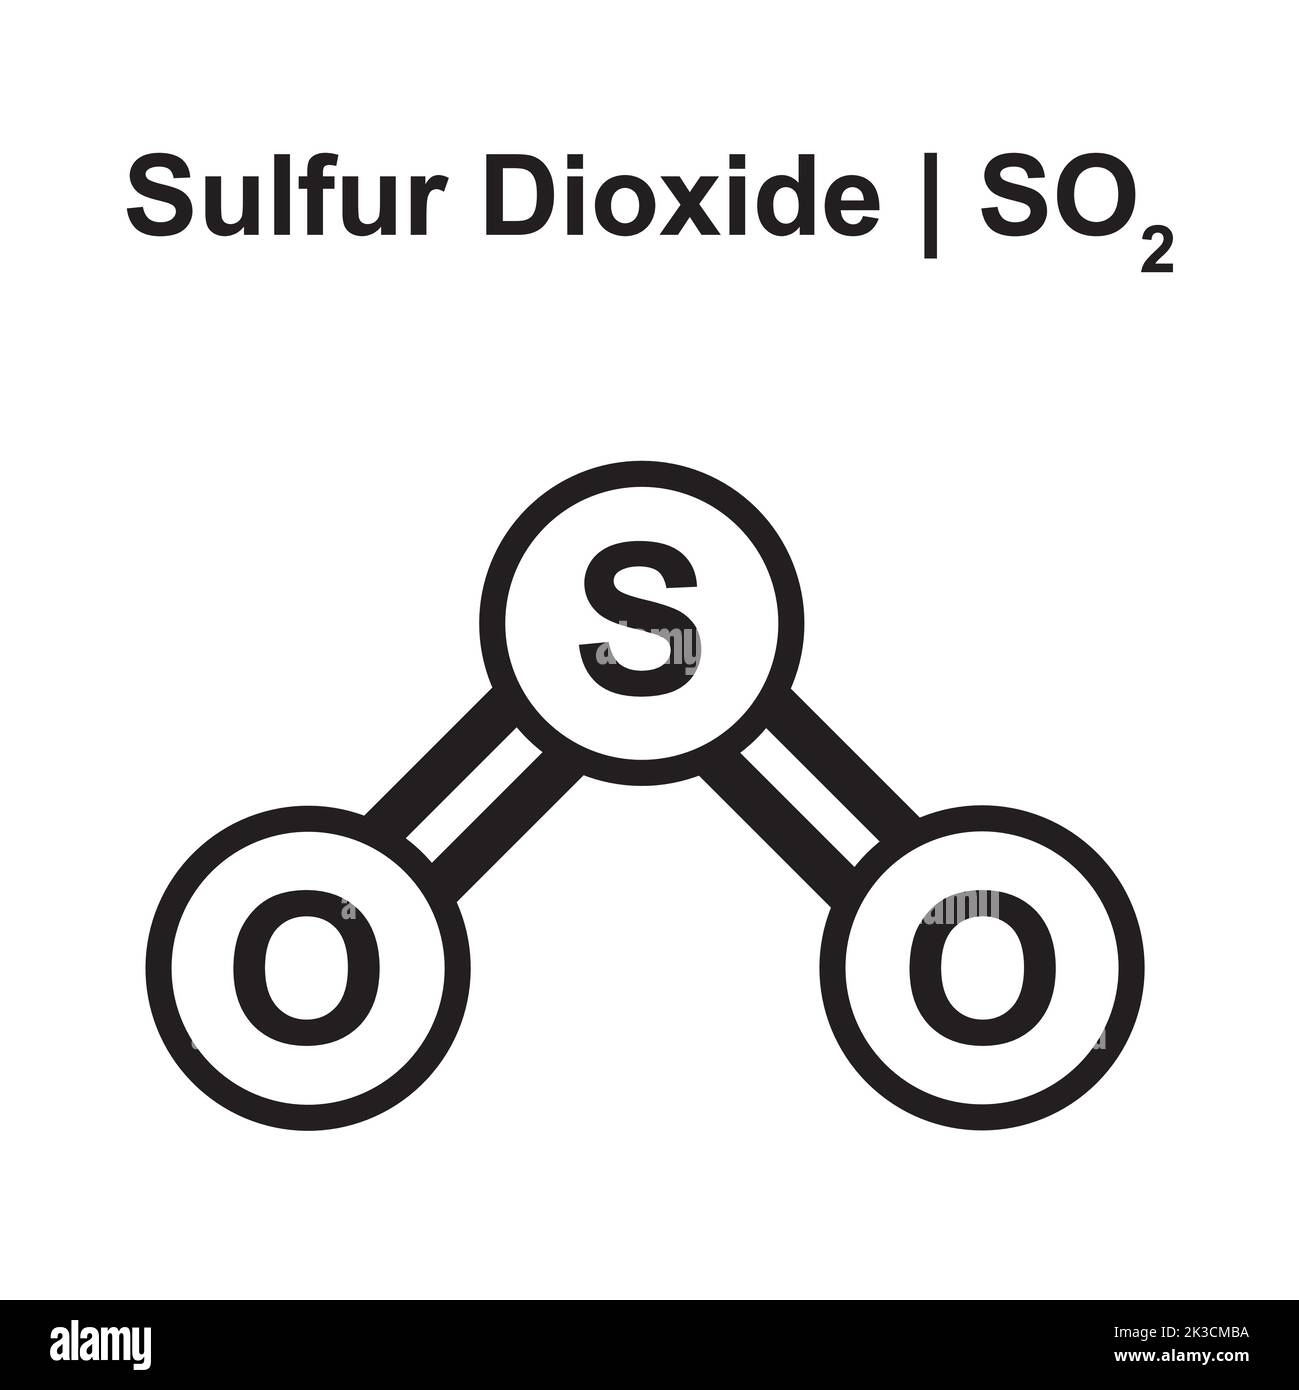 Molekulares Modell des Schwefeldioxid-Moleküls (SO2). Vektorgrafik. Stock Vektor